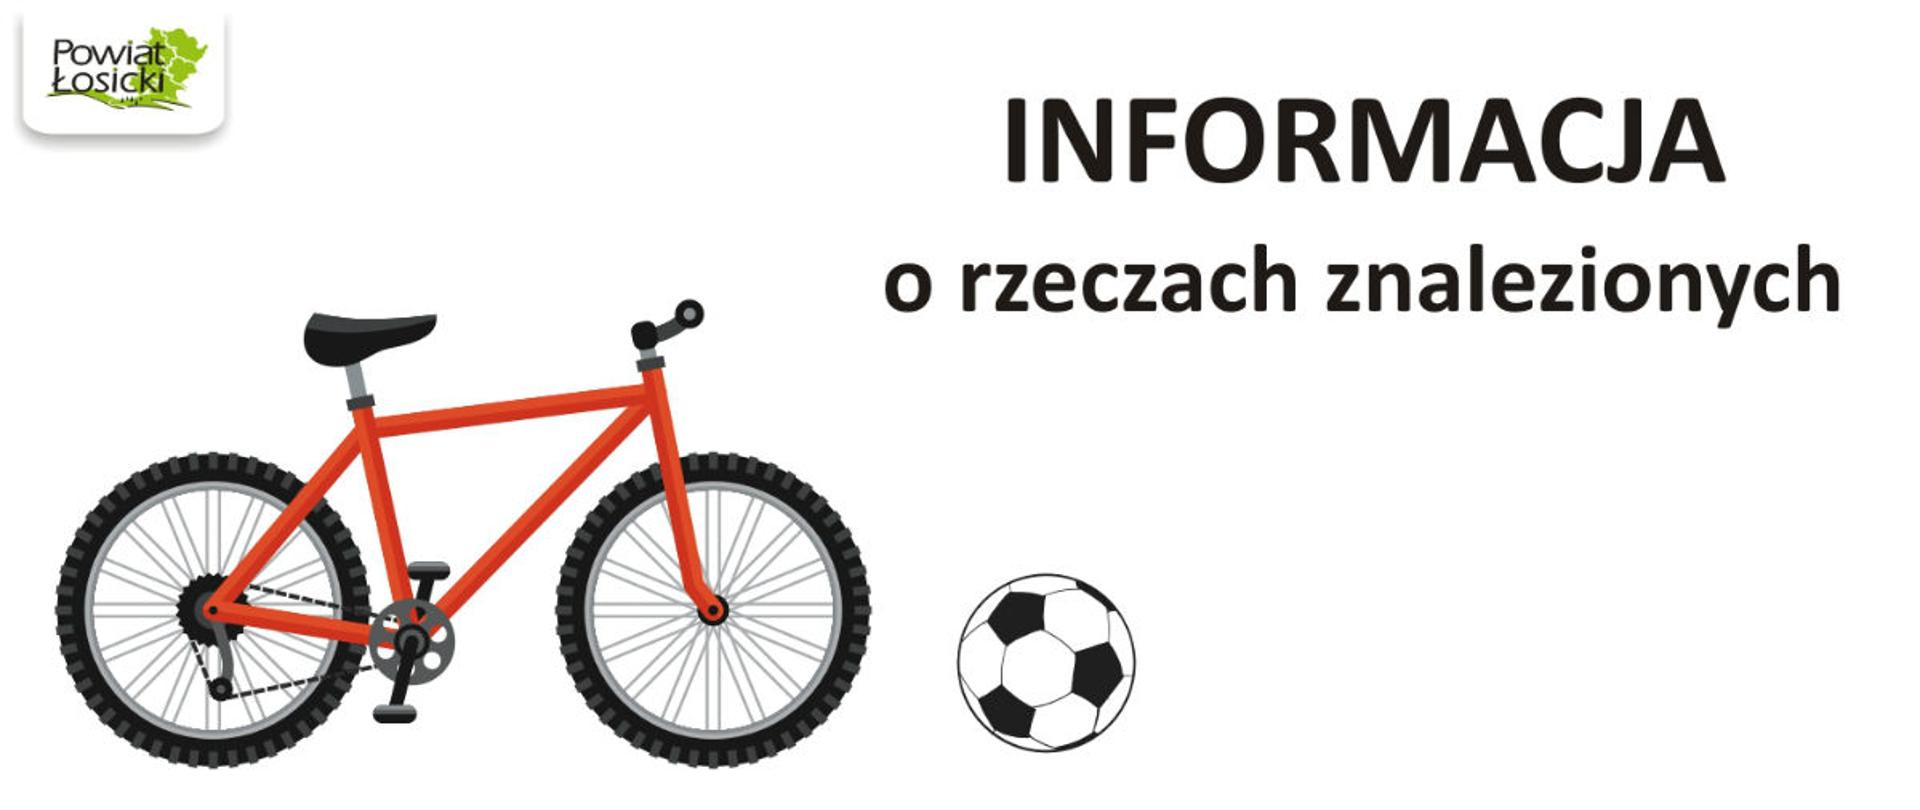 Rower, piłka, napis oraz logo powiatu.